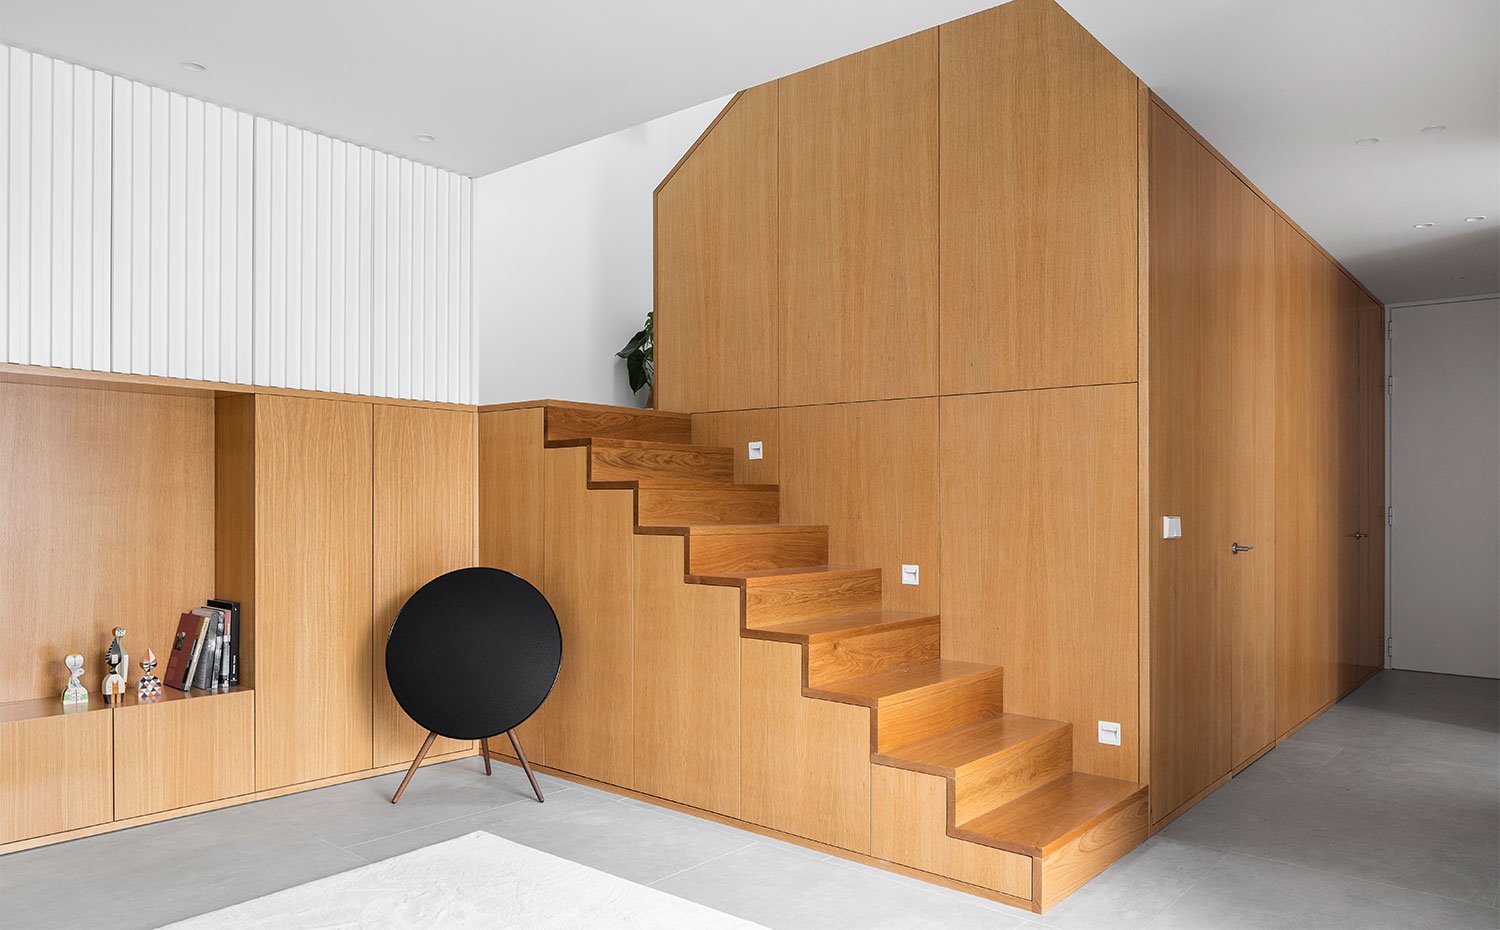 Salón con altavoz de formas circulares, mueble de almacenaje revestido de madera natural, a juego con las escaleras